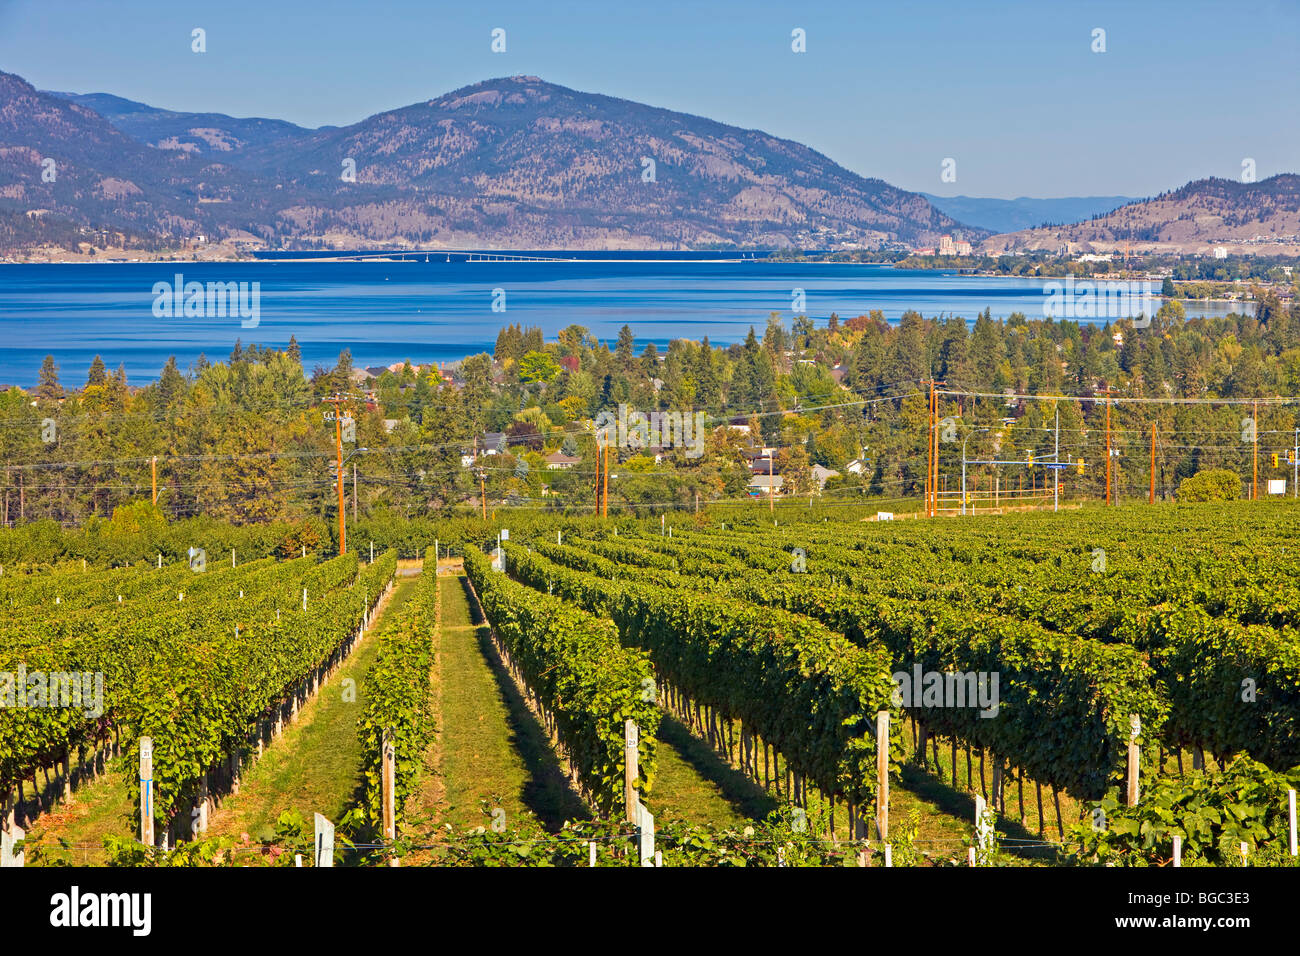 Rows of grapevines growing at a vineyard in Kelowna backdropped by Okanagan Lake, Okanagan, British Columbia, Canada. Stock Photo